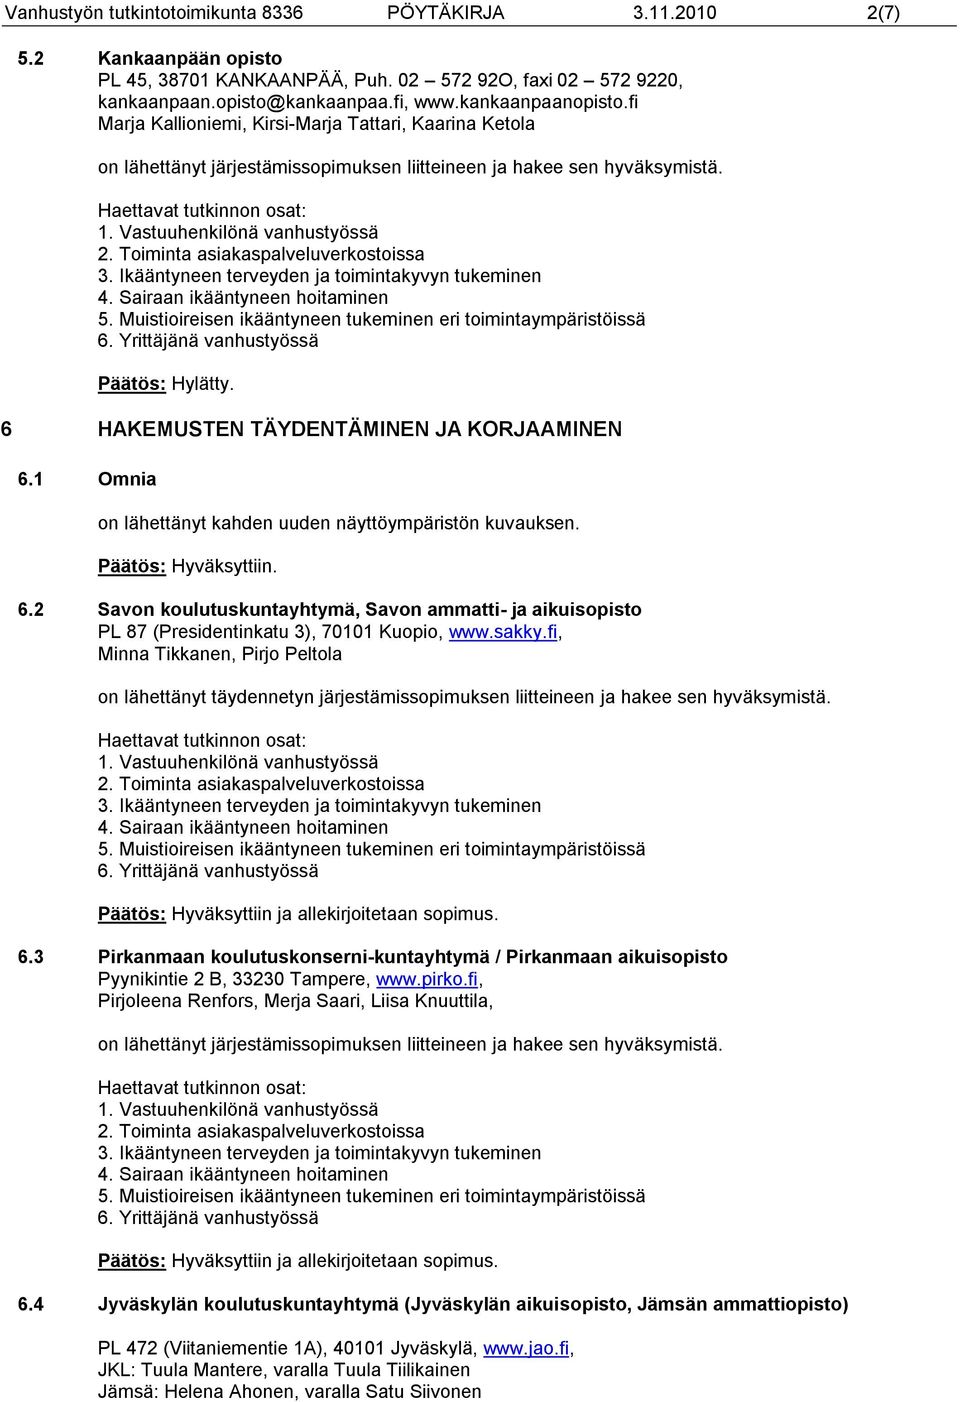 1 Omnia on lähettänyt kahden uuden näyttöympäristön kuvauksen. 6.2 Savon koulutuskuntayhtymä, Savon ammatti- ja aikuisopisto PL 87 (Presidentinkatu 3), 70101 Kuopio, www.sakky.